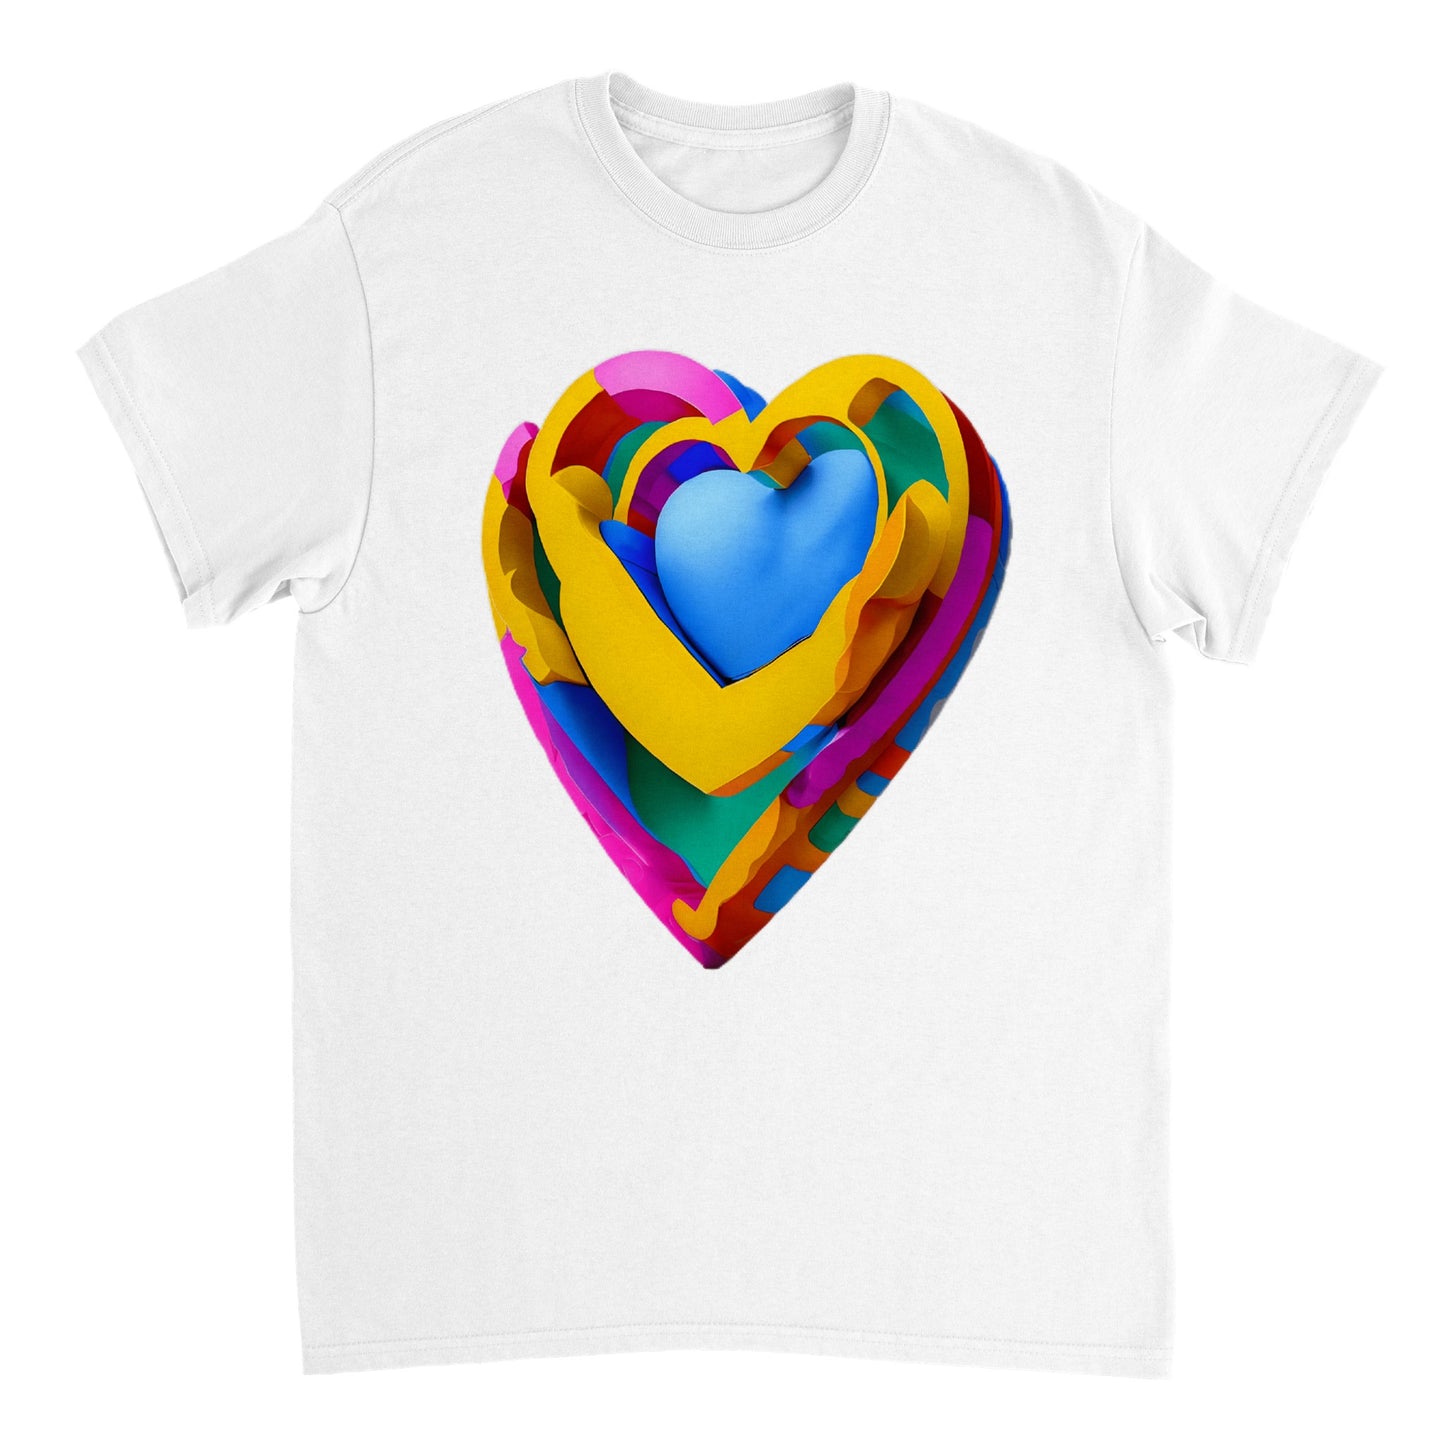 Love Heart - Heavyweight Unisex Crewneck T-shirt 12